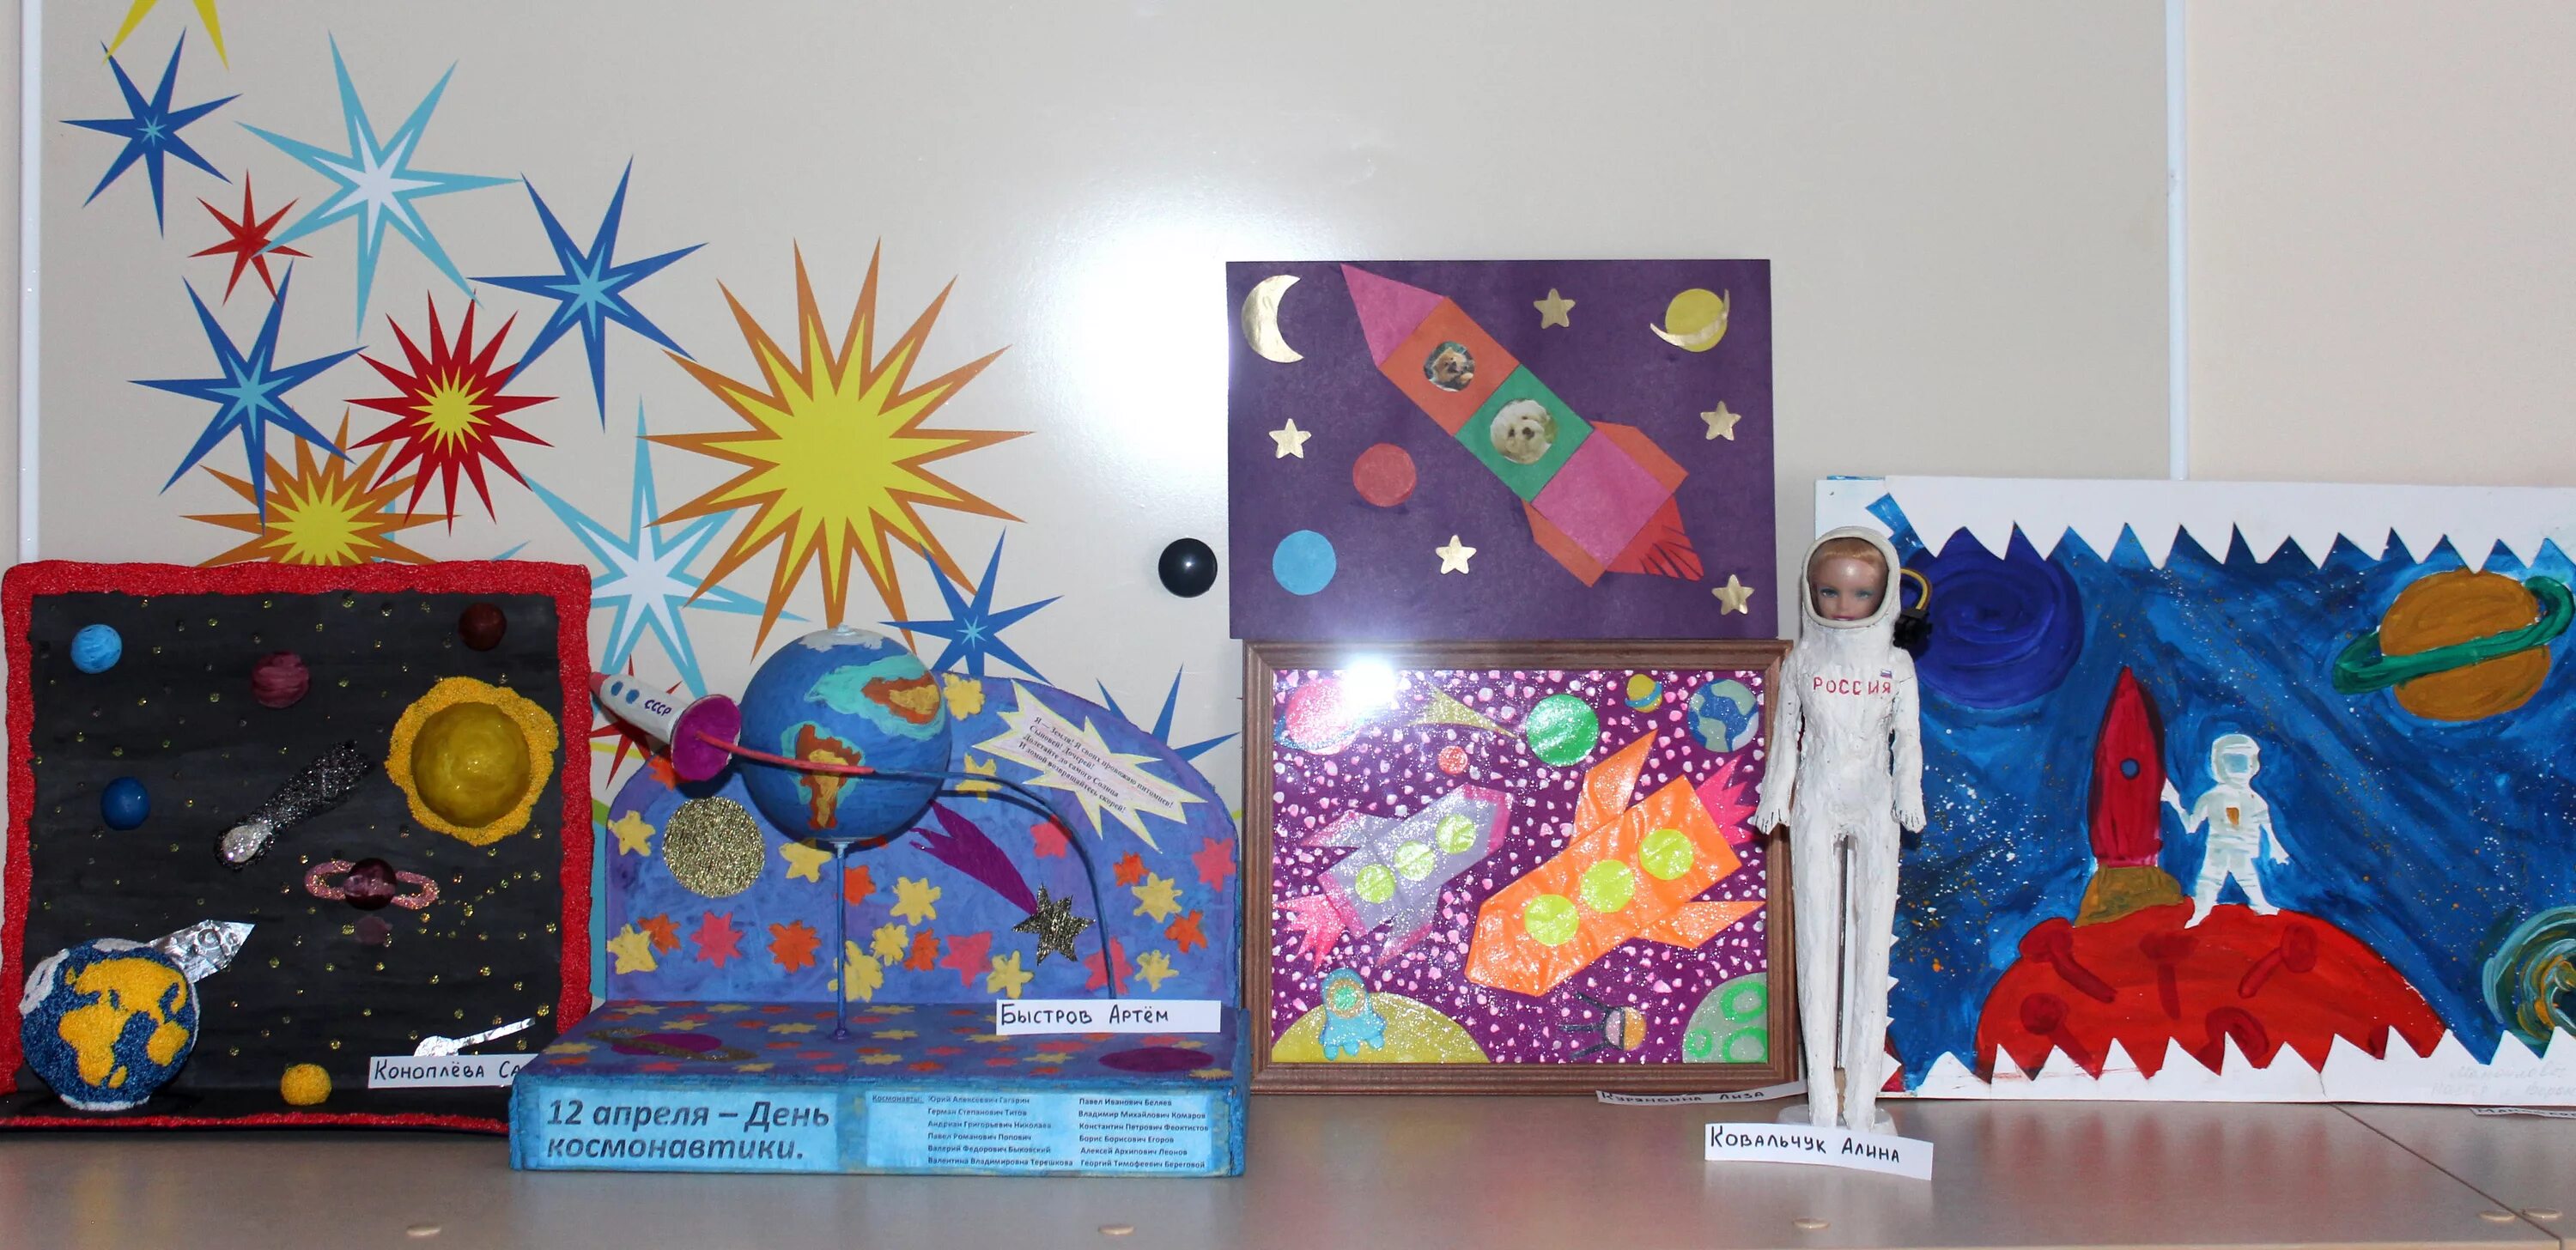 Конкурс в доу ко дню космонавтики. Поделка ко Дню космонавтики. Выставка ко Дню космонавтики в детском саду. Поделка ко Дню космонавтики в детский сад.